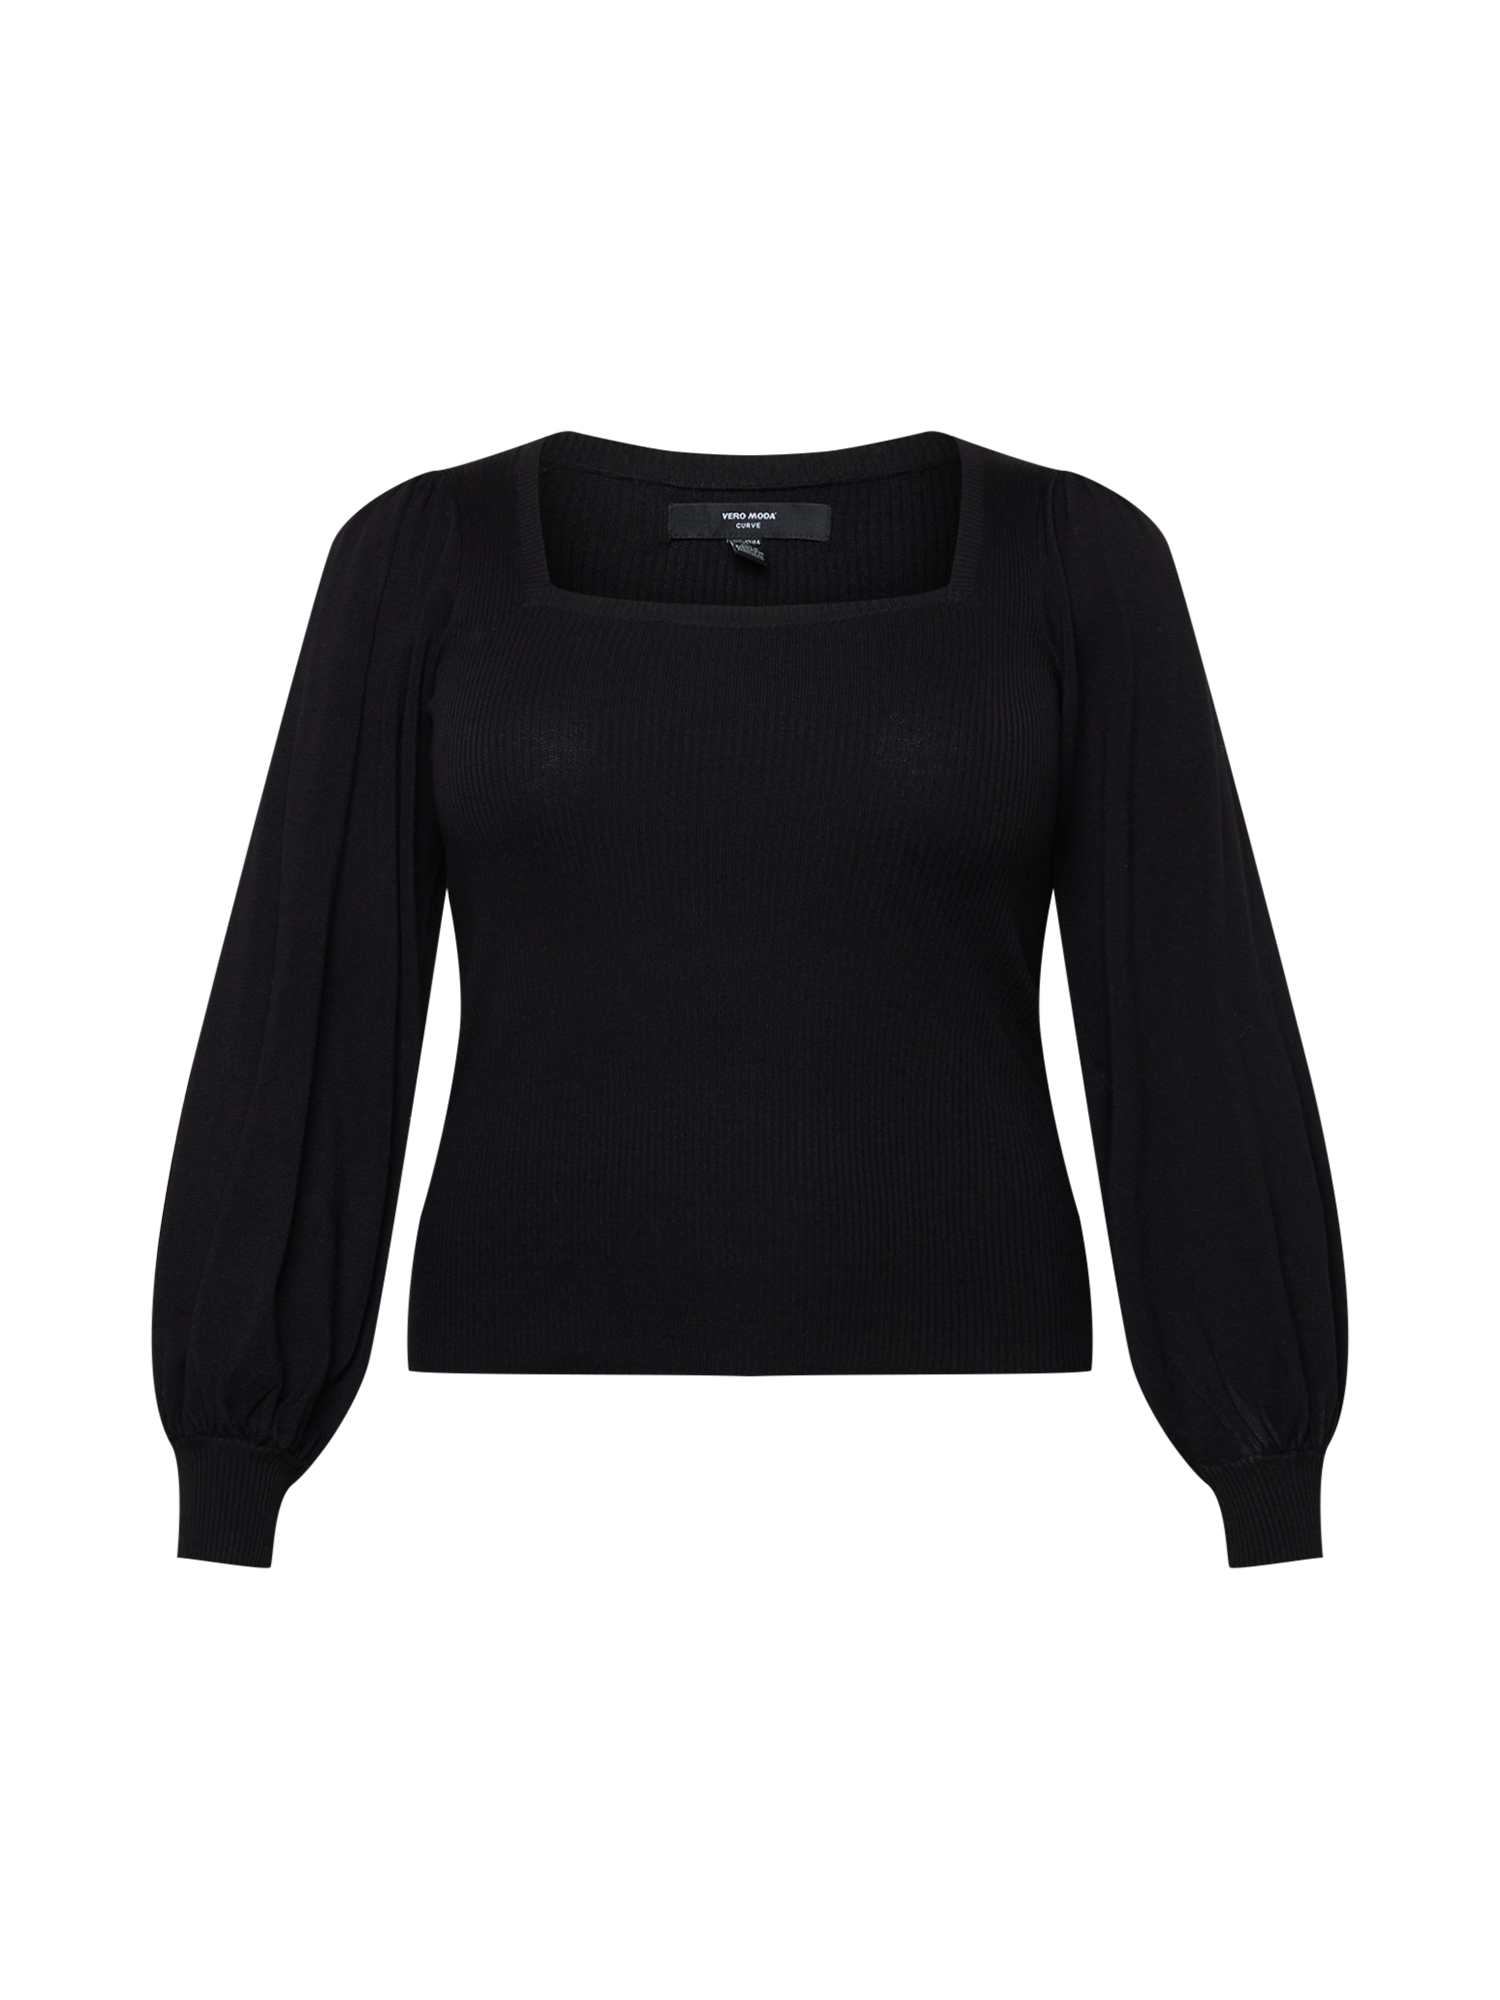 Swetry & dzianina Kobiety Vero Moda Curve Sweter Glory w kolorze Czarnym 